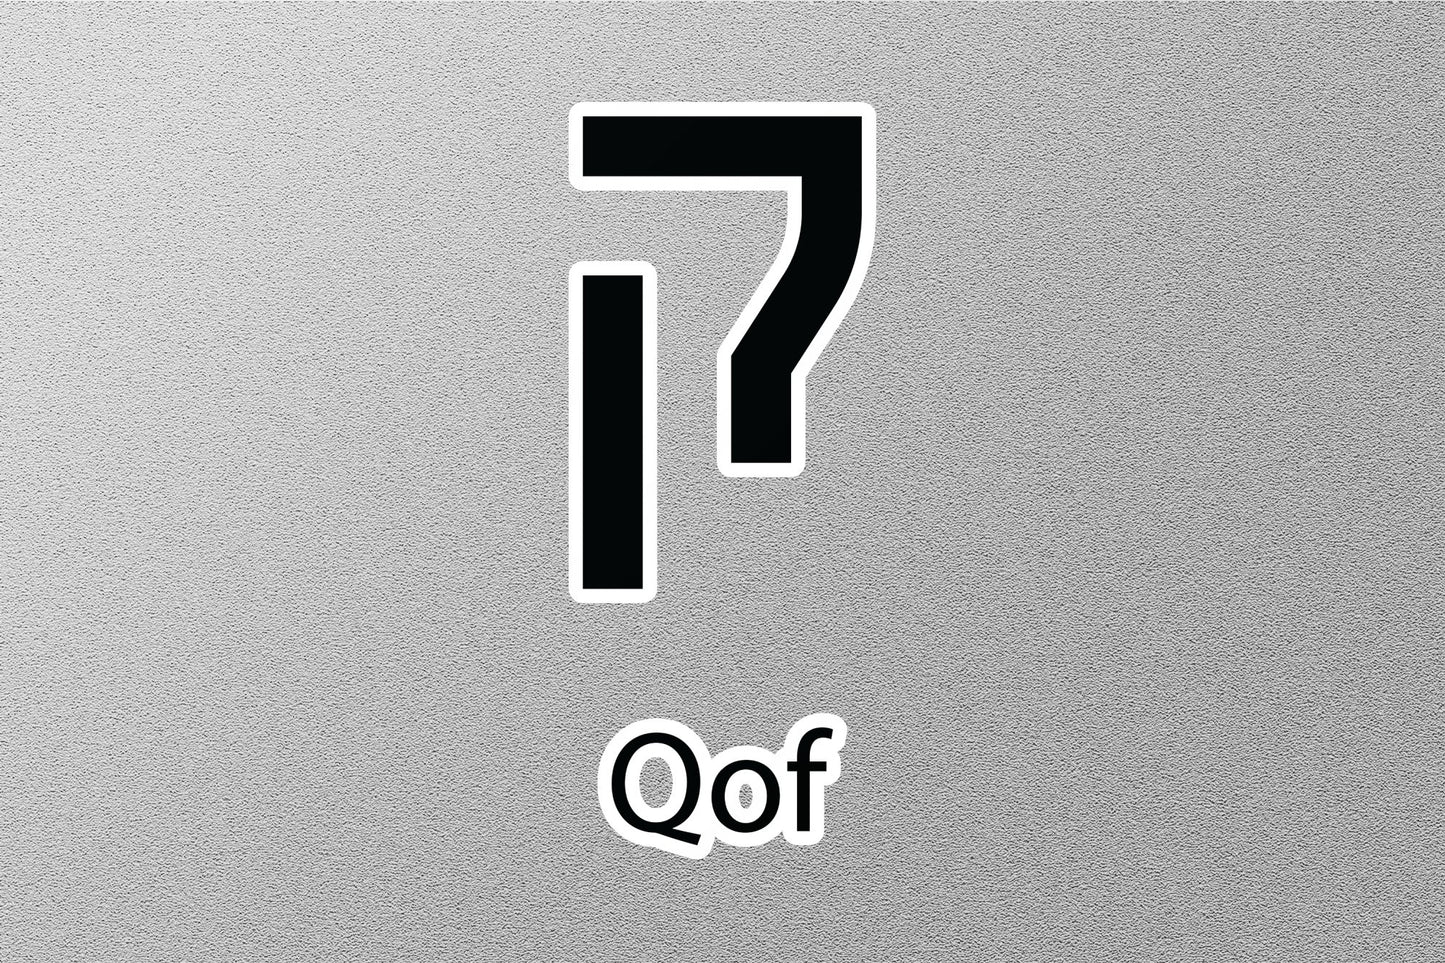 Qof Hebrew Alphabet Sticker